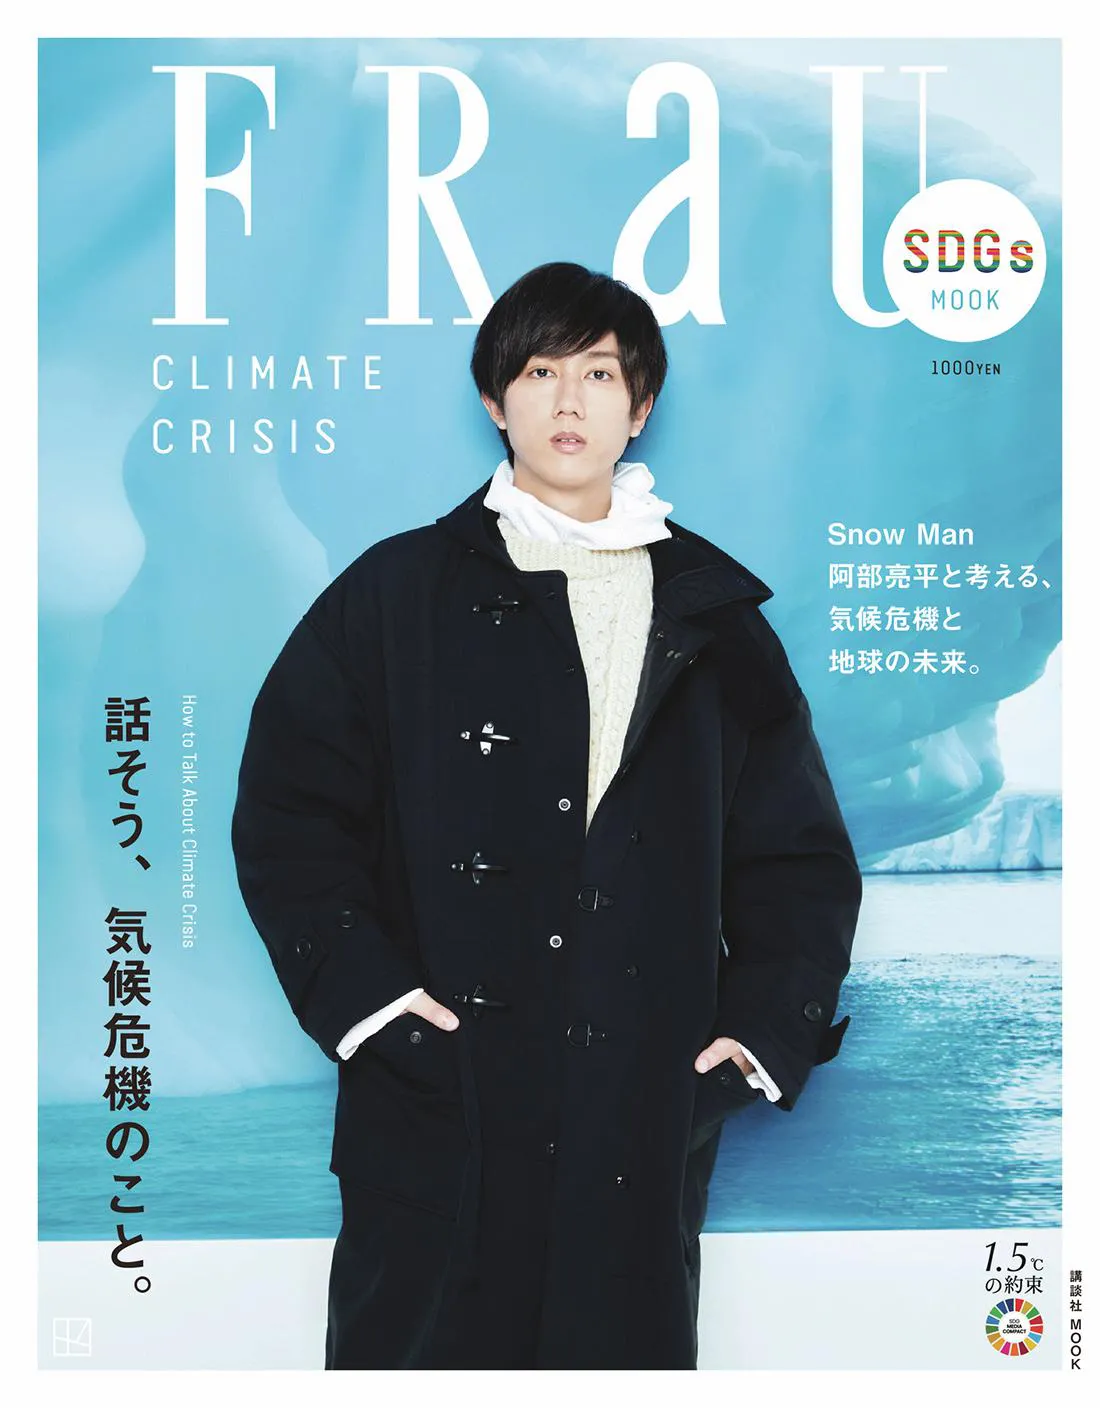 Snow Man阿部亮平、“気象予報士”ならではの視点で気候危機を考える